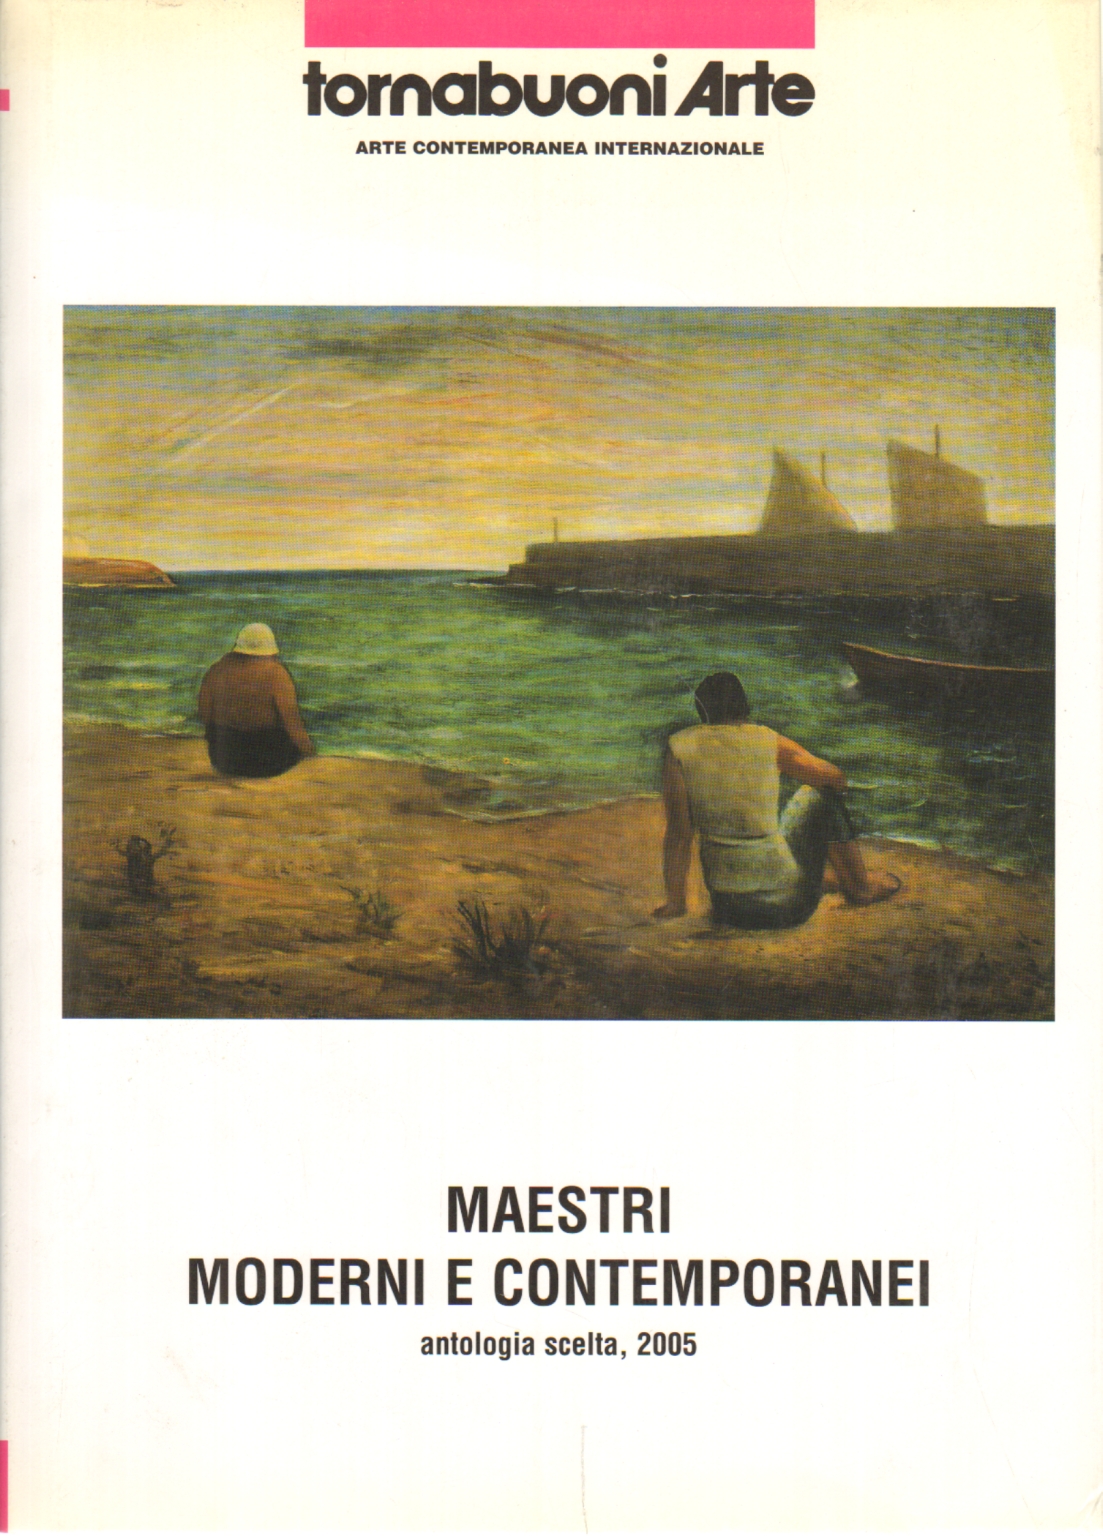 Maestros del arte moderno y contemporáneo, s.una.